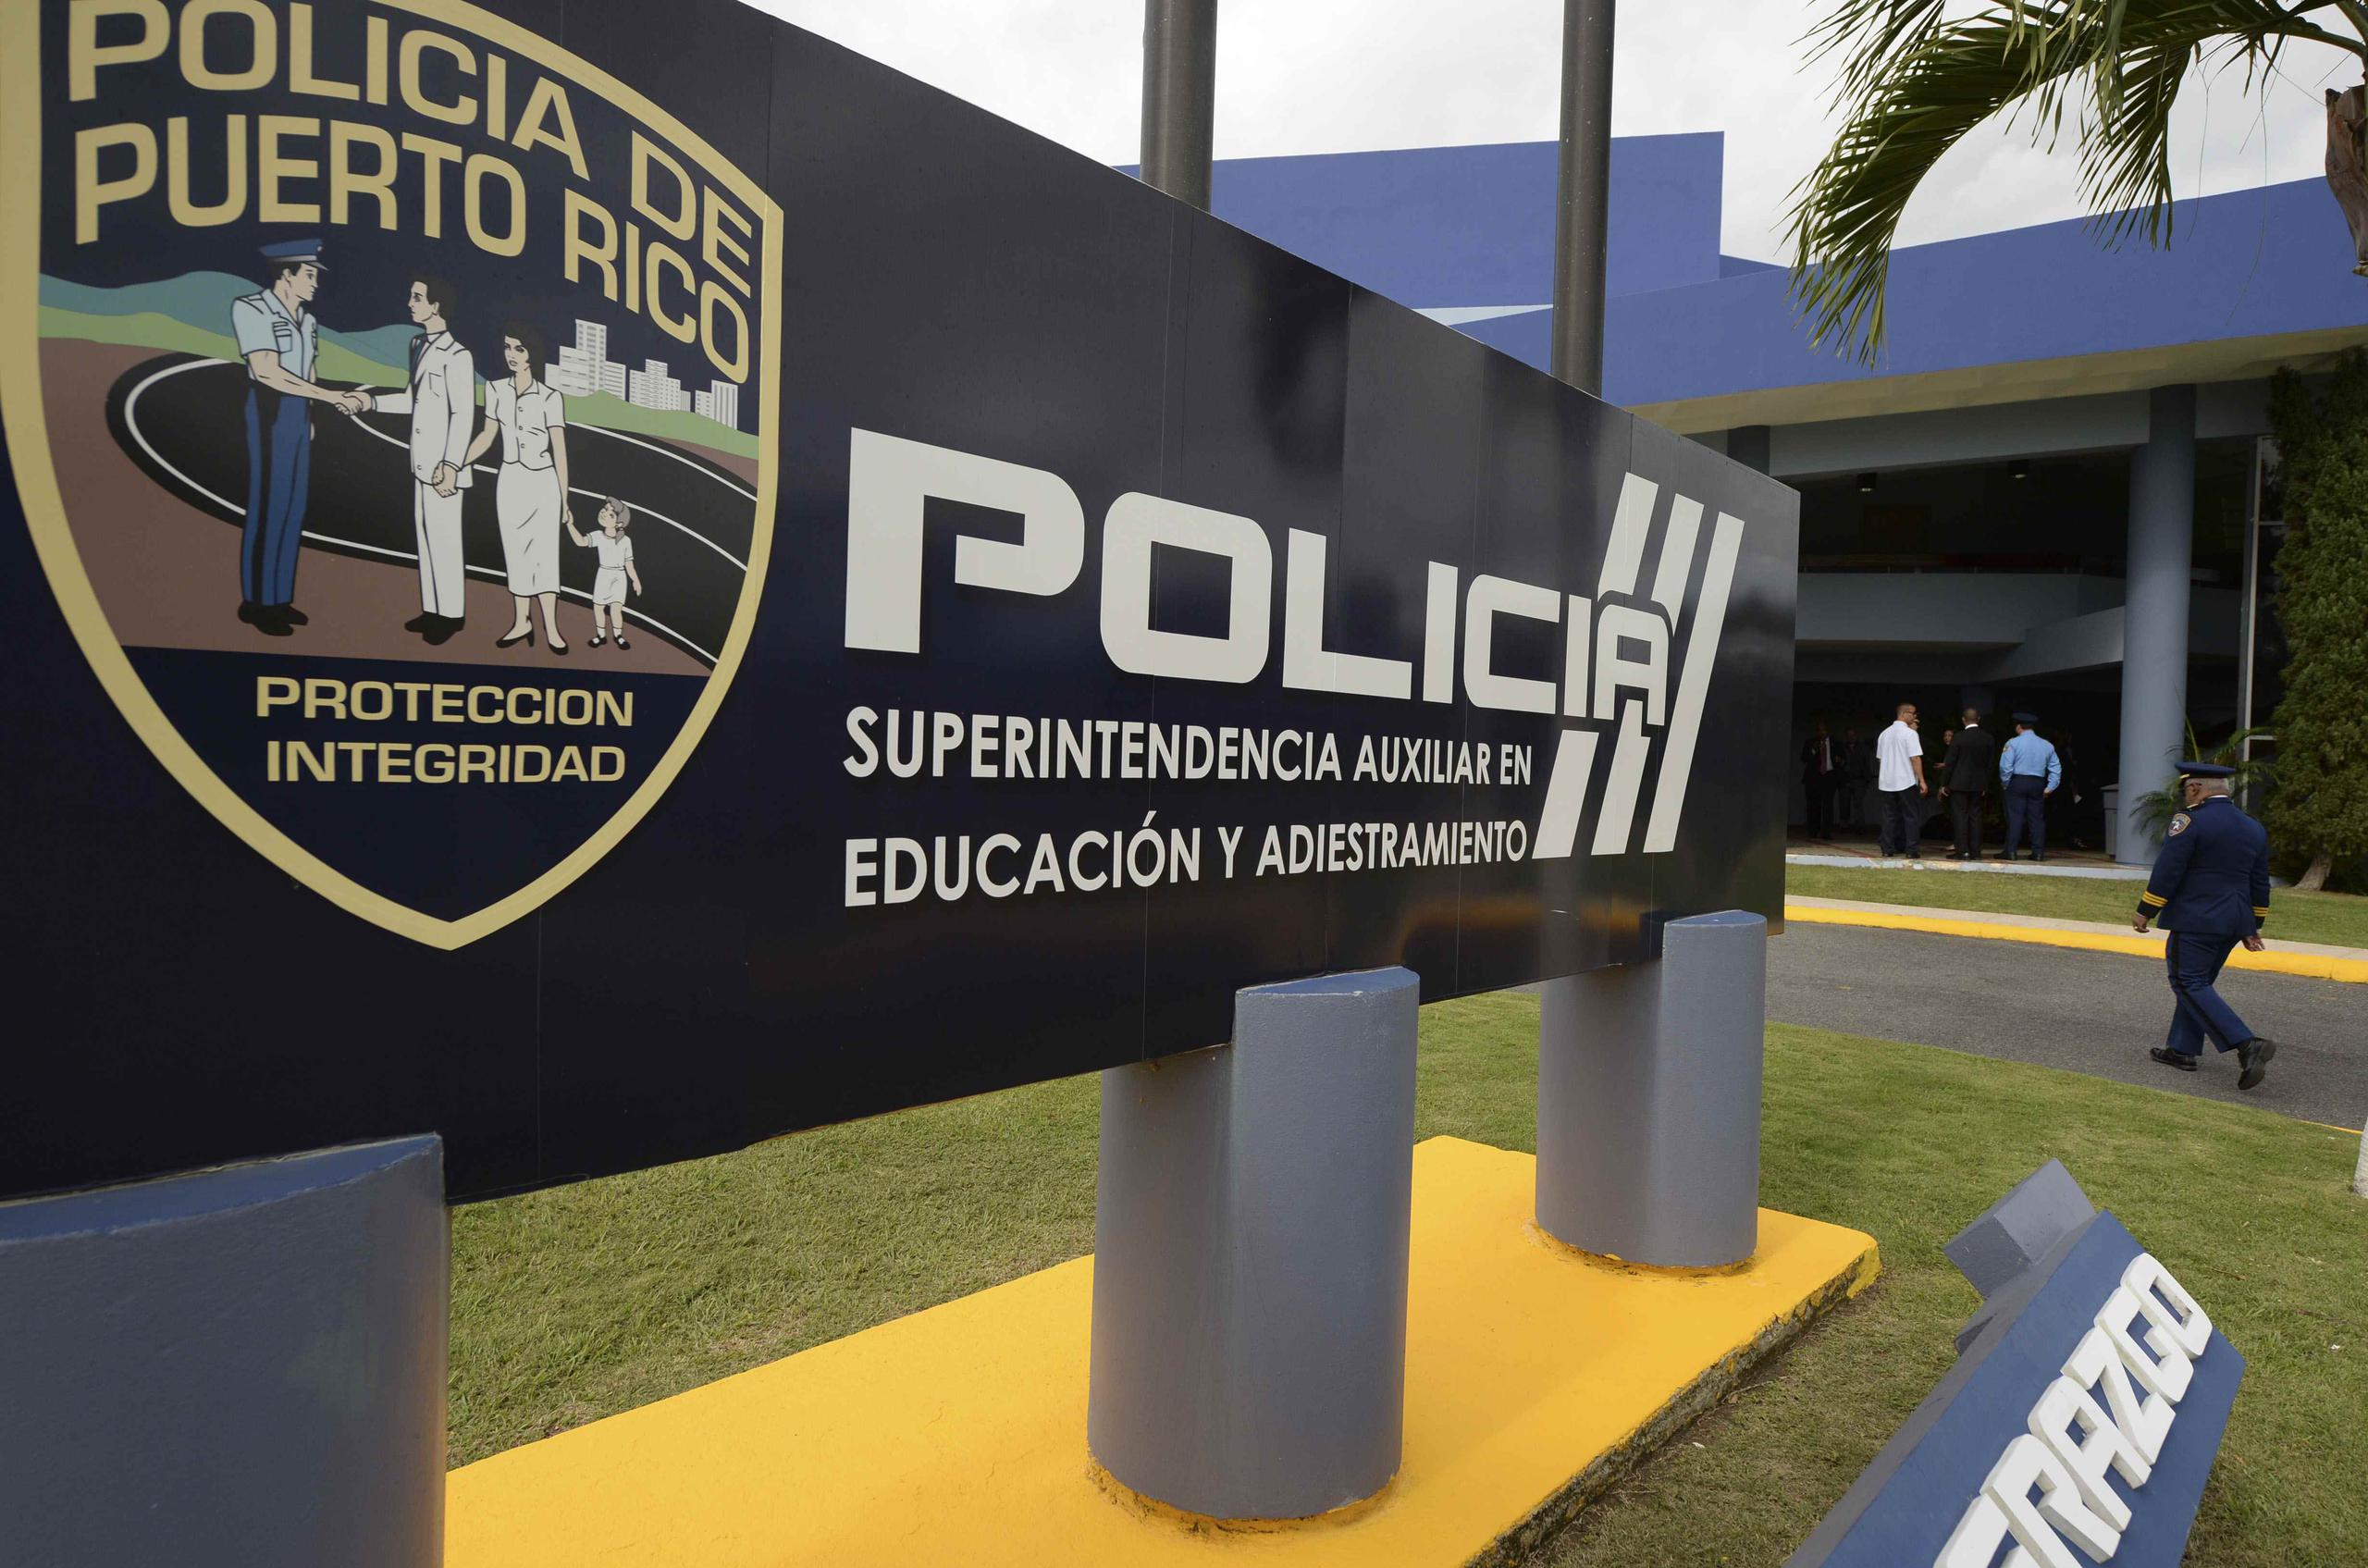 Las pruebas se realizarán en la Academia de la Policía entre el 1 y el 5 de agosto. (GFR Media)